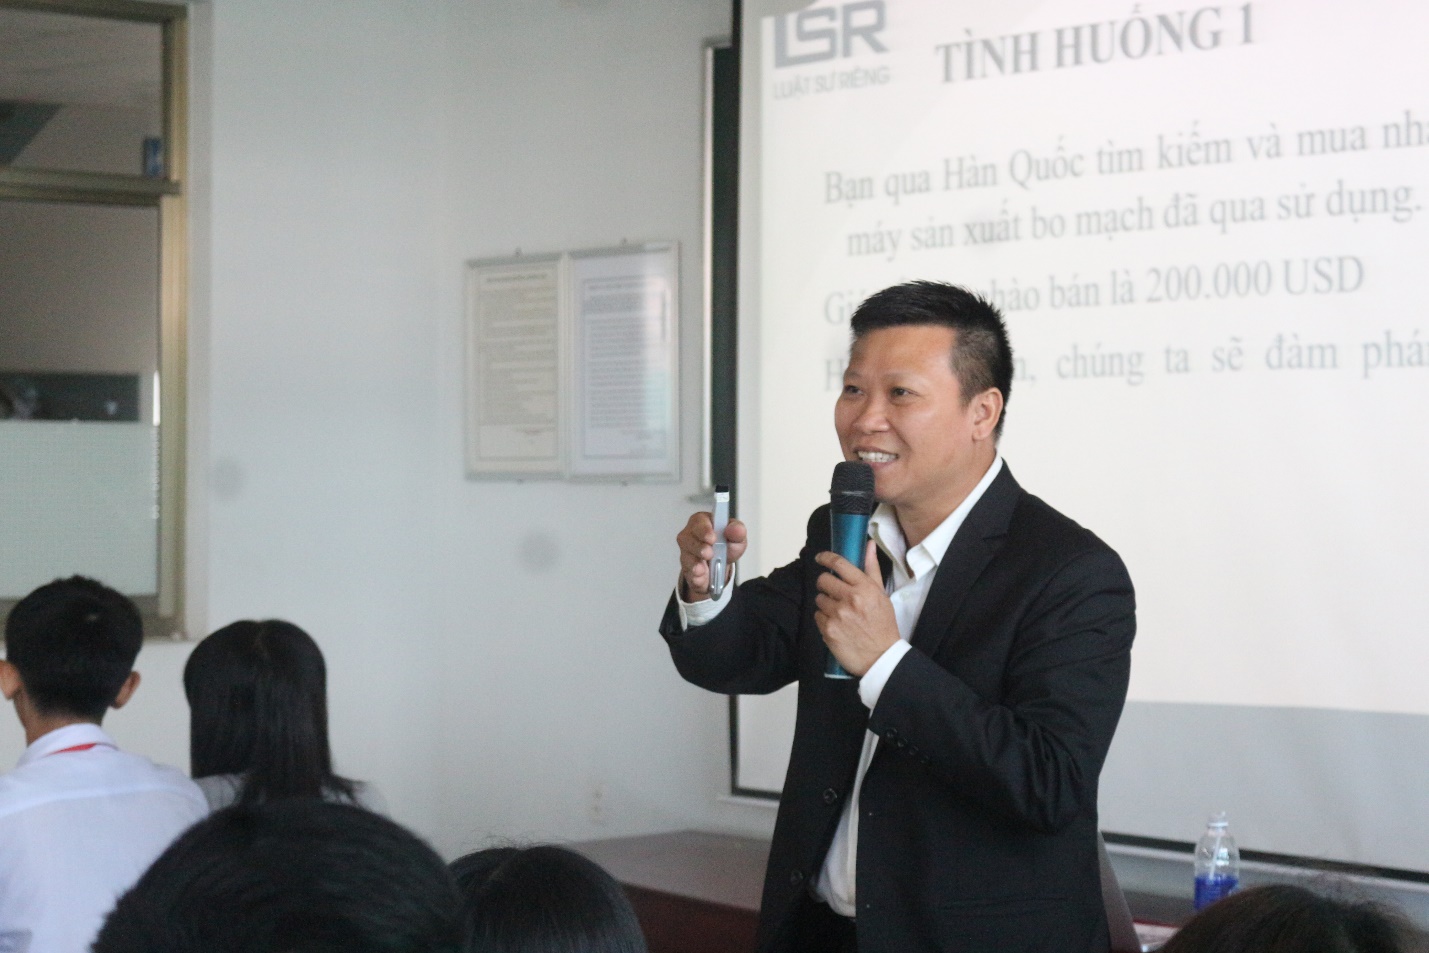 Giám đốc Lê Xuân Hữu chia sẻ kinh nghiệm đàm phán hợp đồng ngoại thương